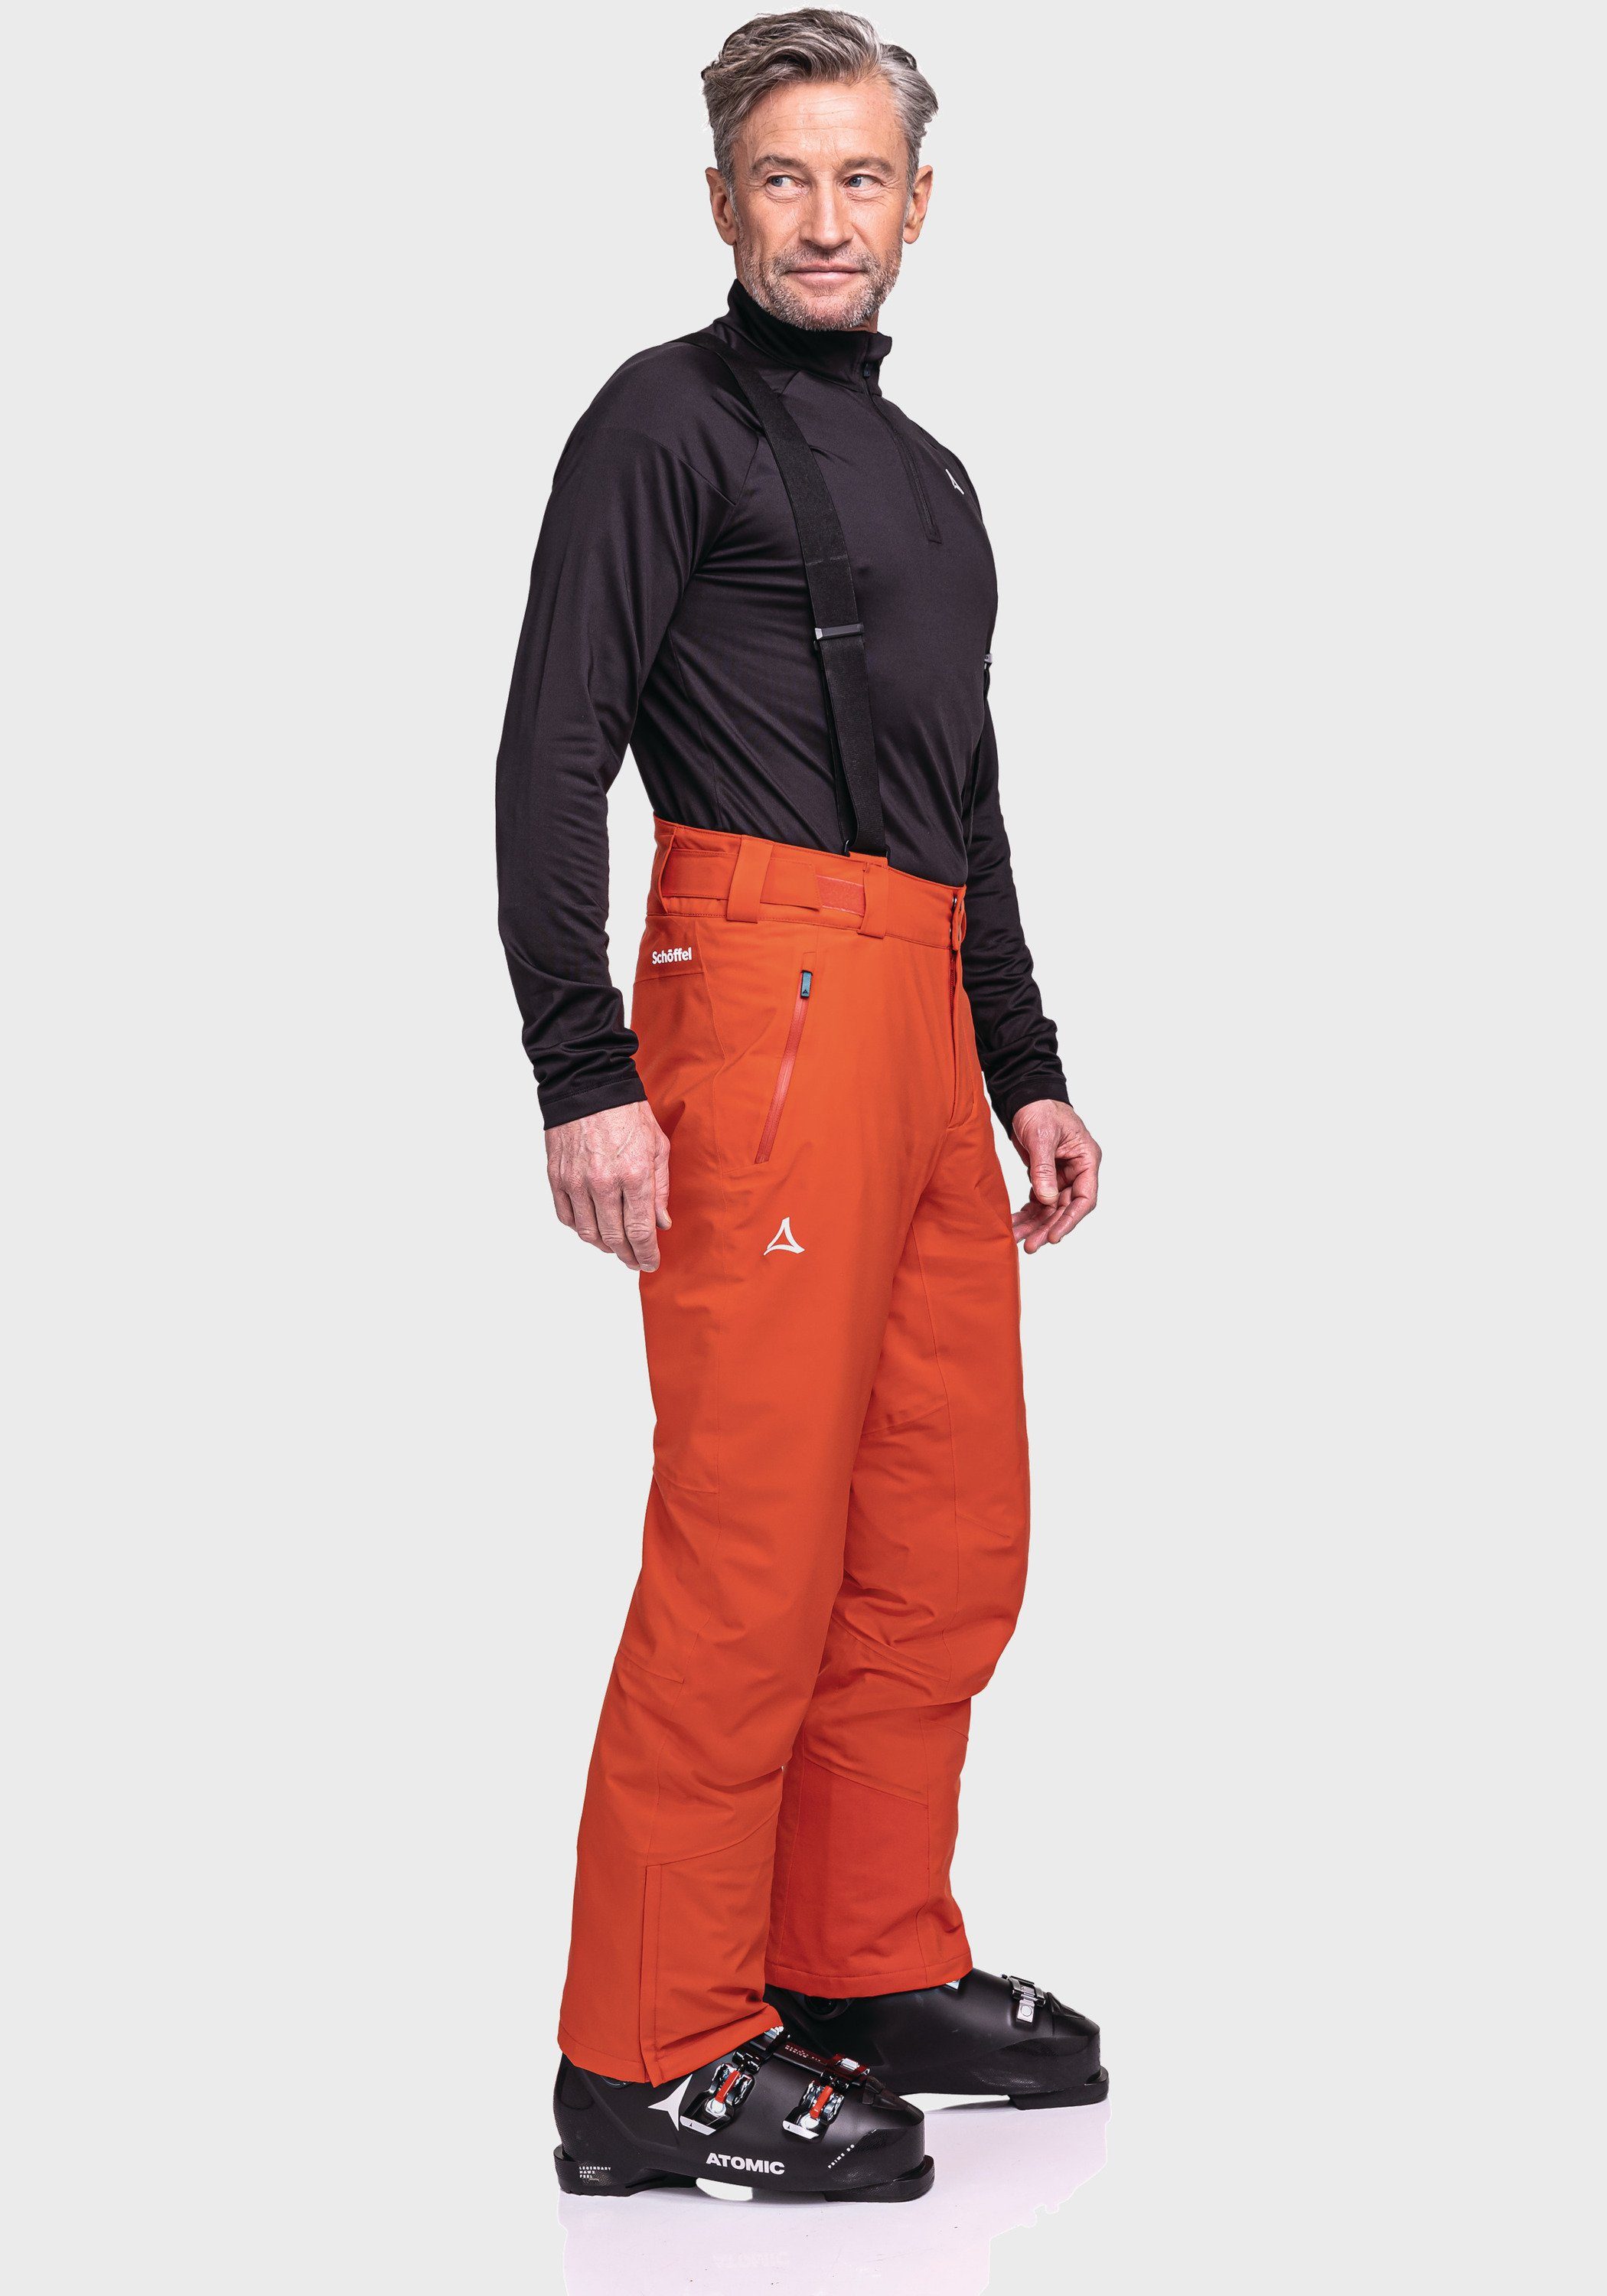 Schöffel M orange Latzhose Ski Weissach Pants